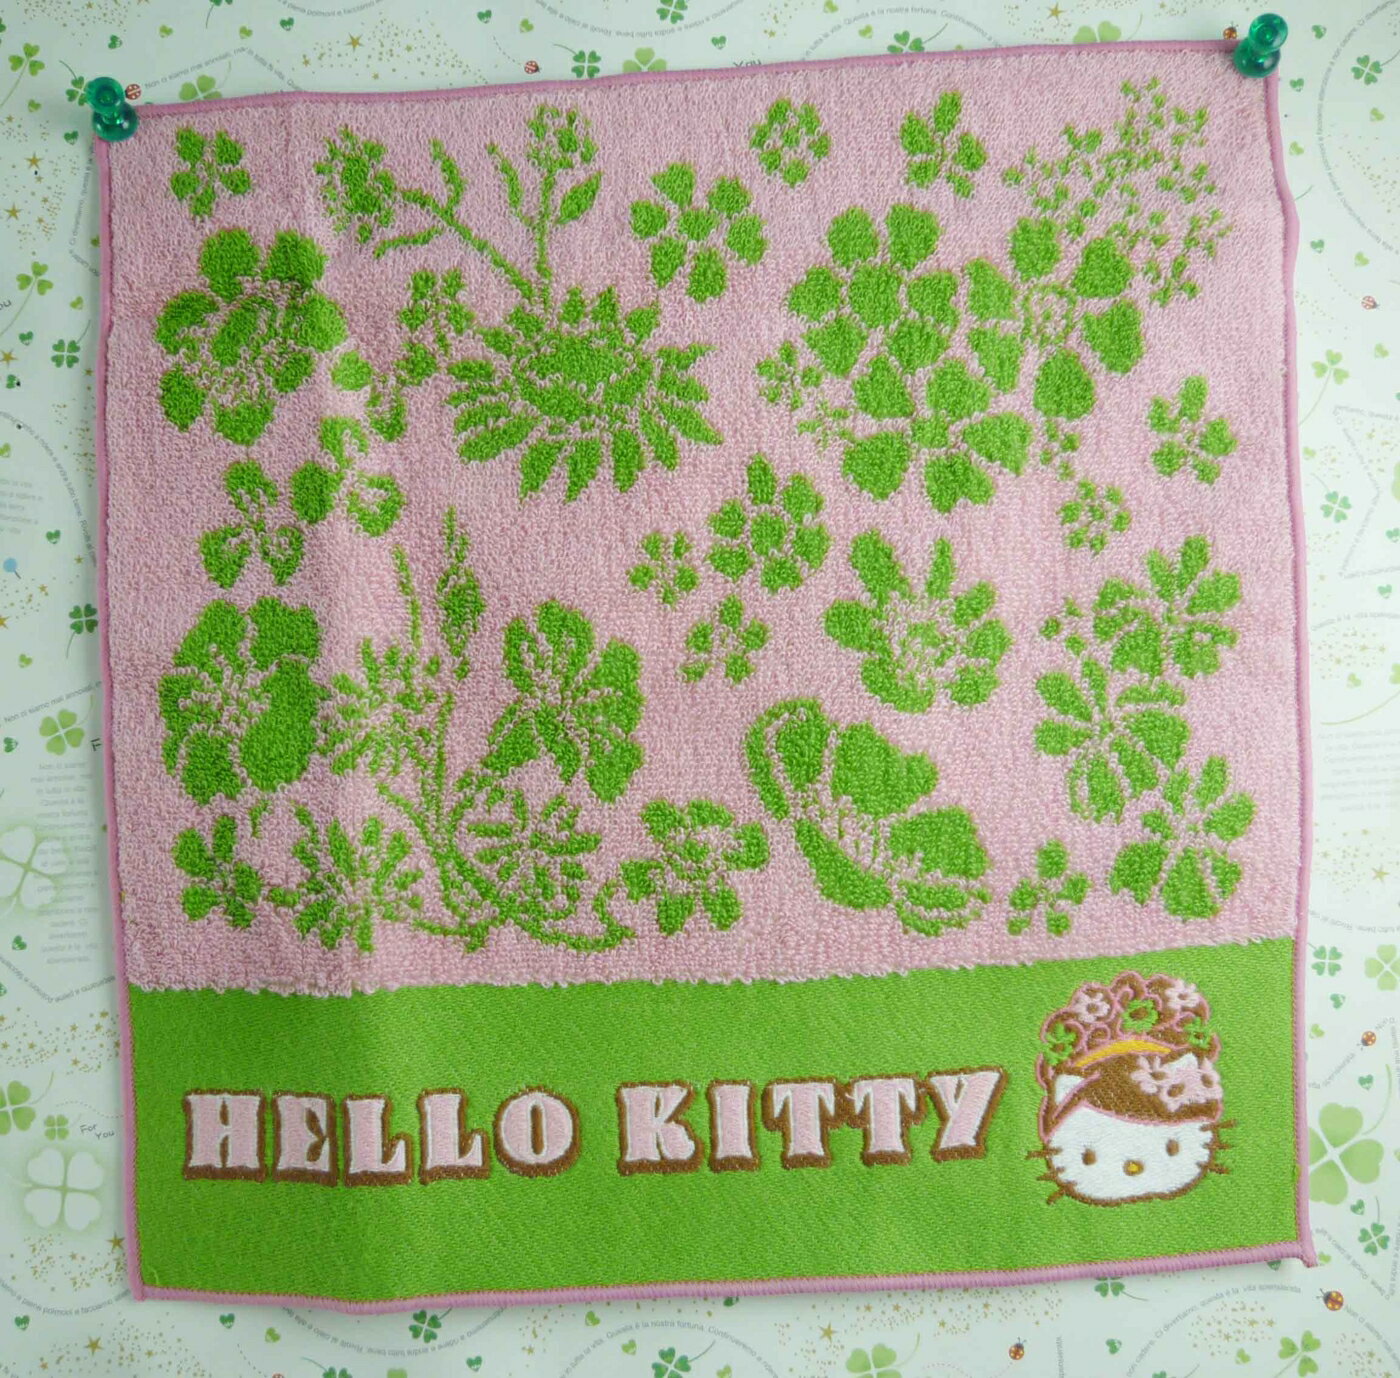 【震撼精品百貨】Hello Kitty 凱蒂貓 方巾-限量款-奧黛麗赫本 震撼日式精品百貨